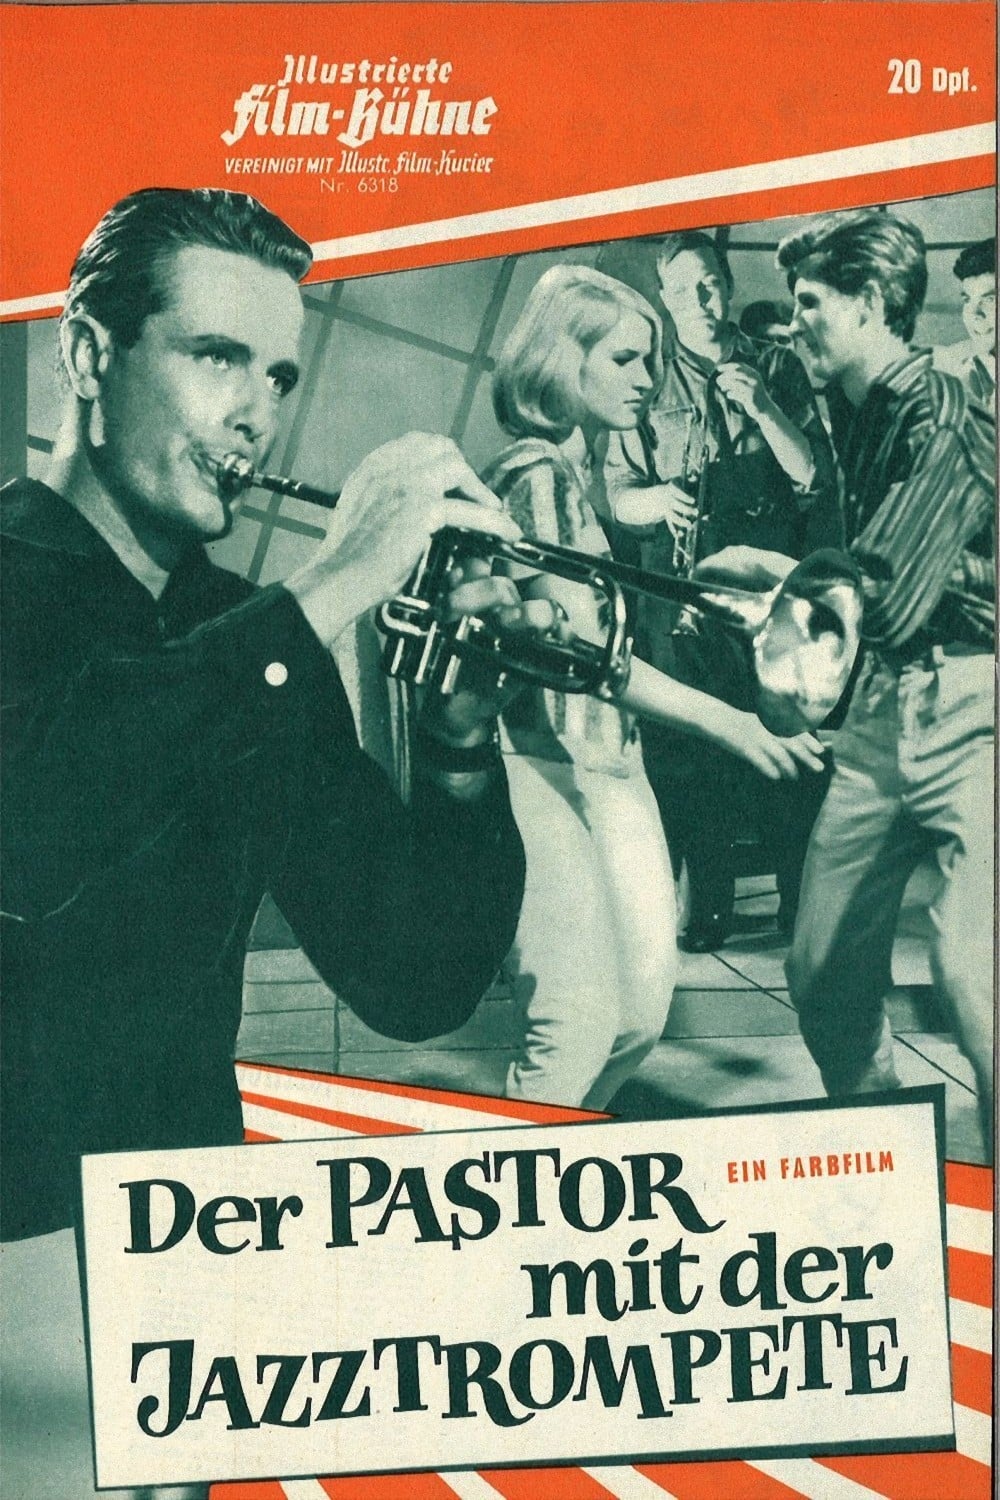 Der Pastor mit der Jazztrompete (1962)